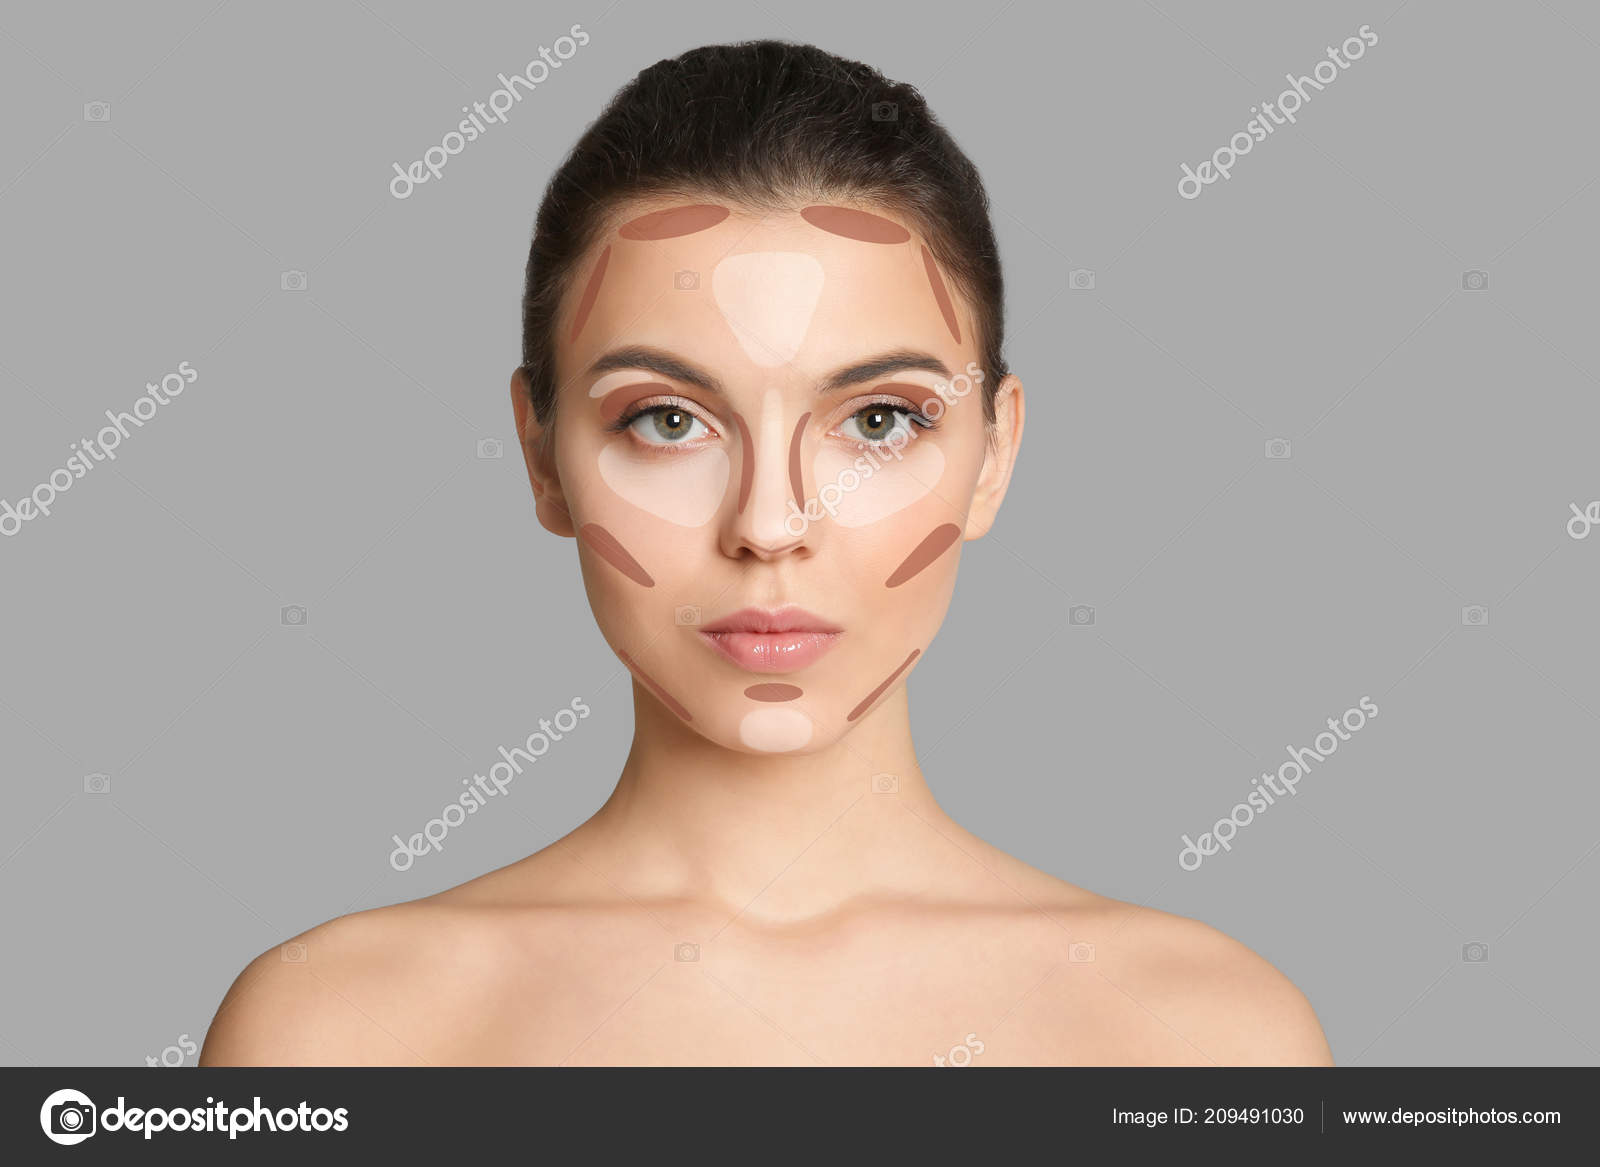 https://st4.depositphotos.com/16122460/20949/i/1600/depositphotos_209491030-stock-photo-woman-facial-makeup-contouring-map.jpg